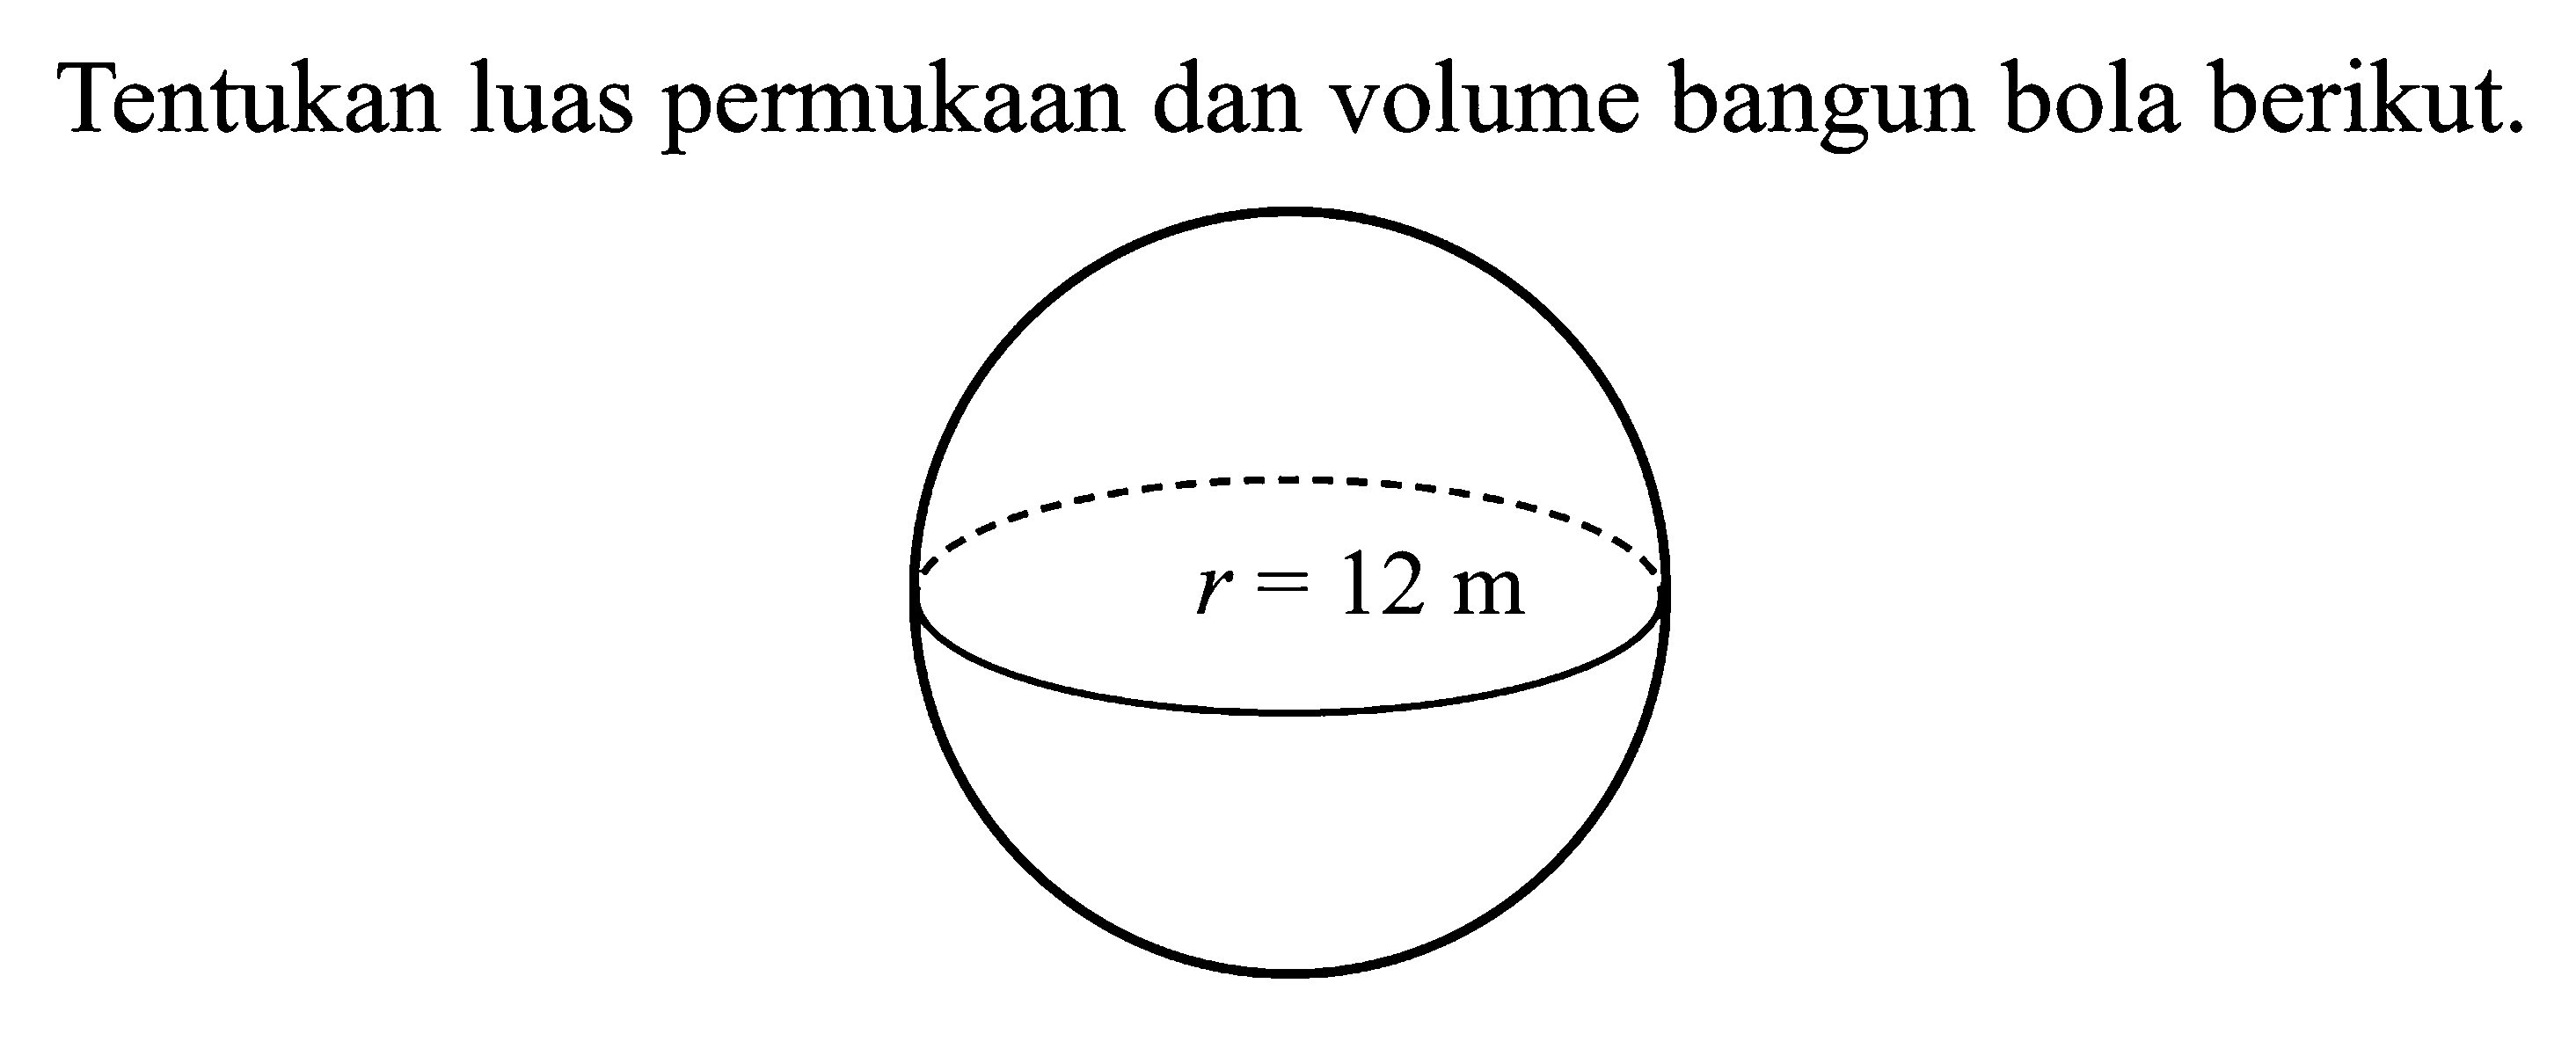 Tentukan luas permukaan dan volume bangun bola berikut.